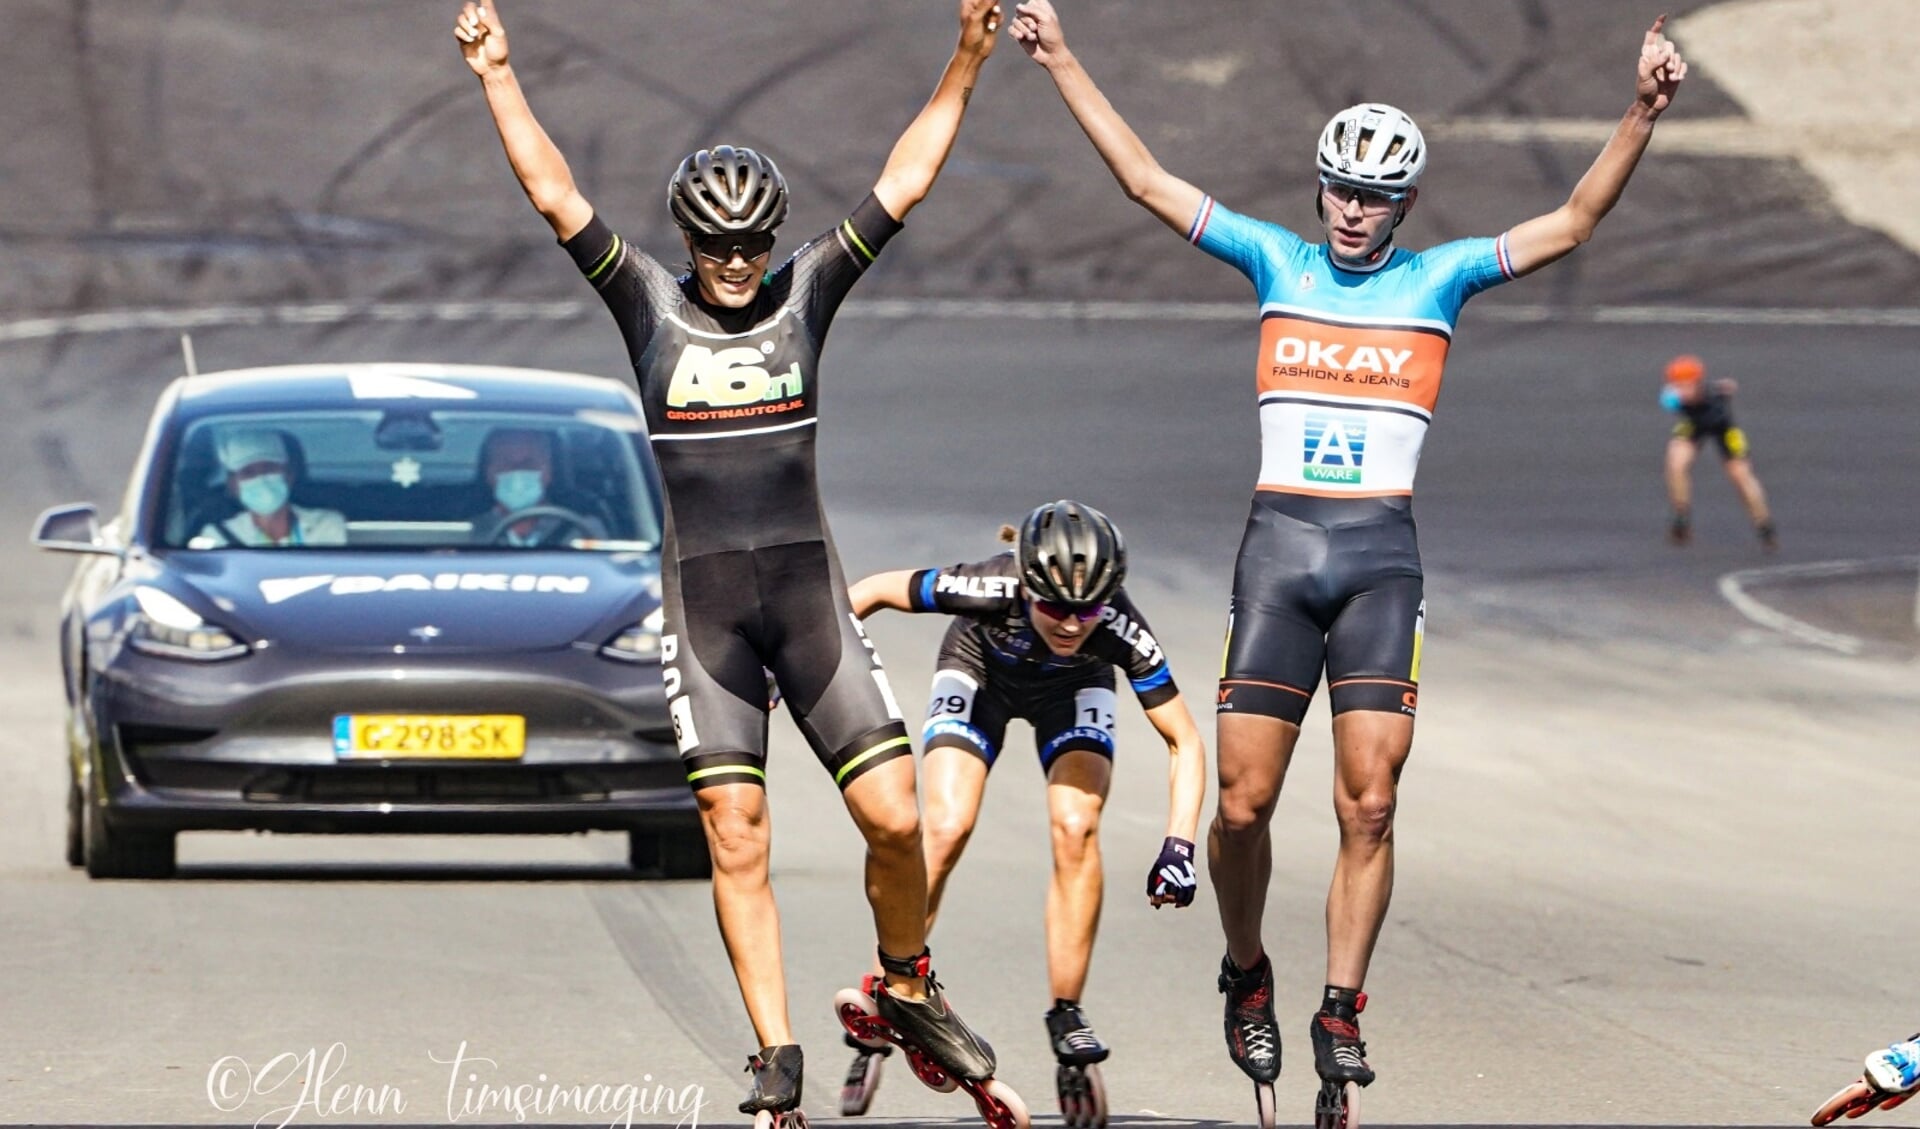 Manon en Jordy winnen het NK Inline op het circuit van Zandvoort